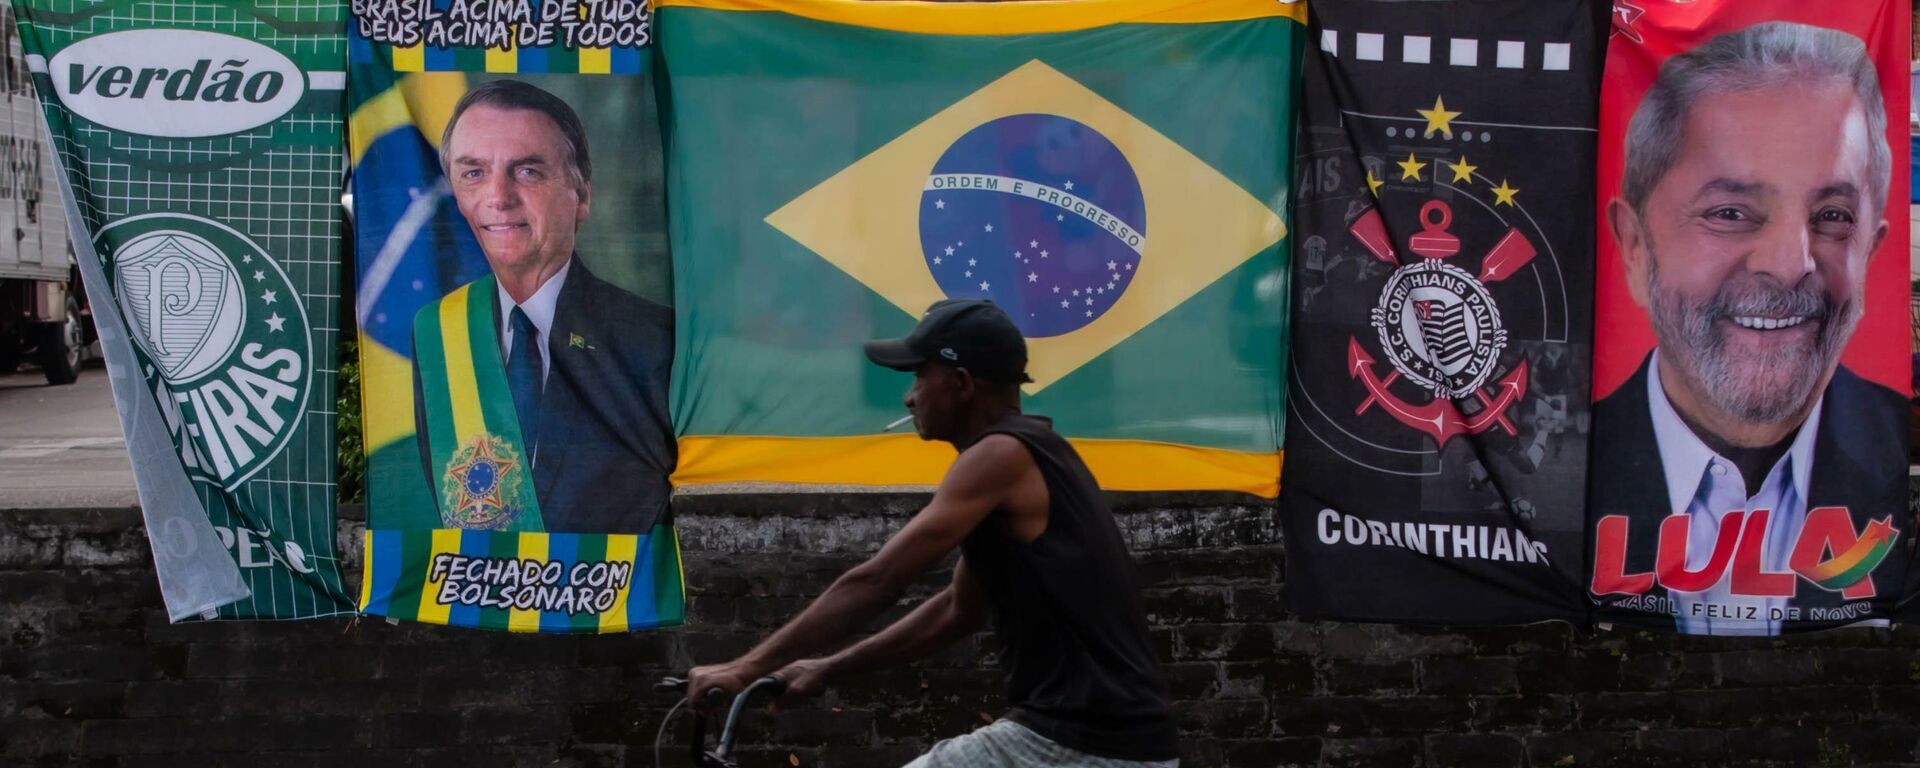 Ambulante vende bandeiras de Jair Bolsonaro e Lula no mesmo varal na cidade de Santos, São Paulo, 25 de janeiro de 2022. - Sputnik Brasil, 1920, 12.04.2022